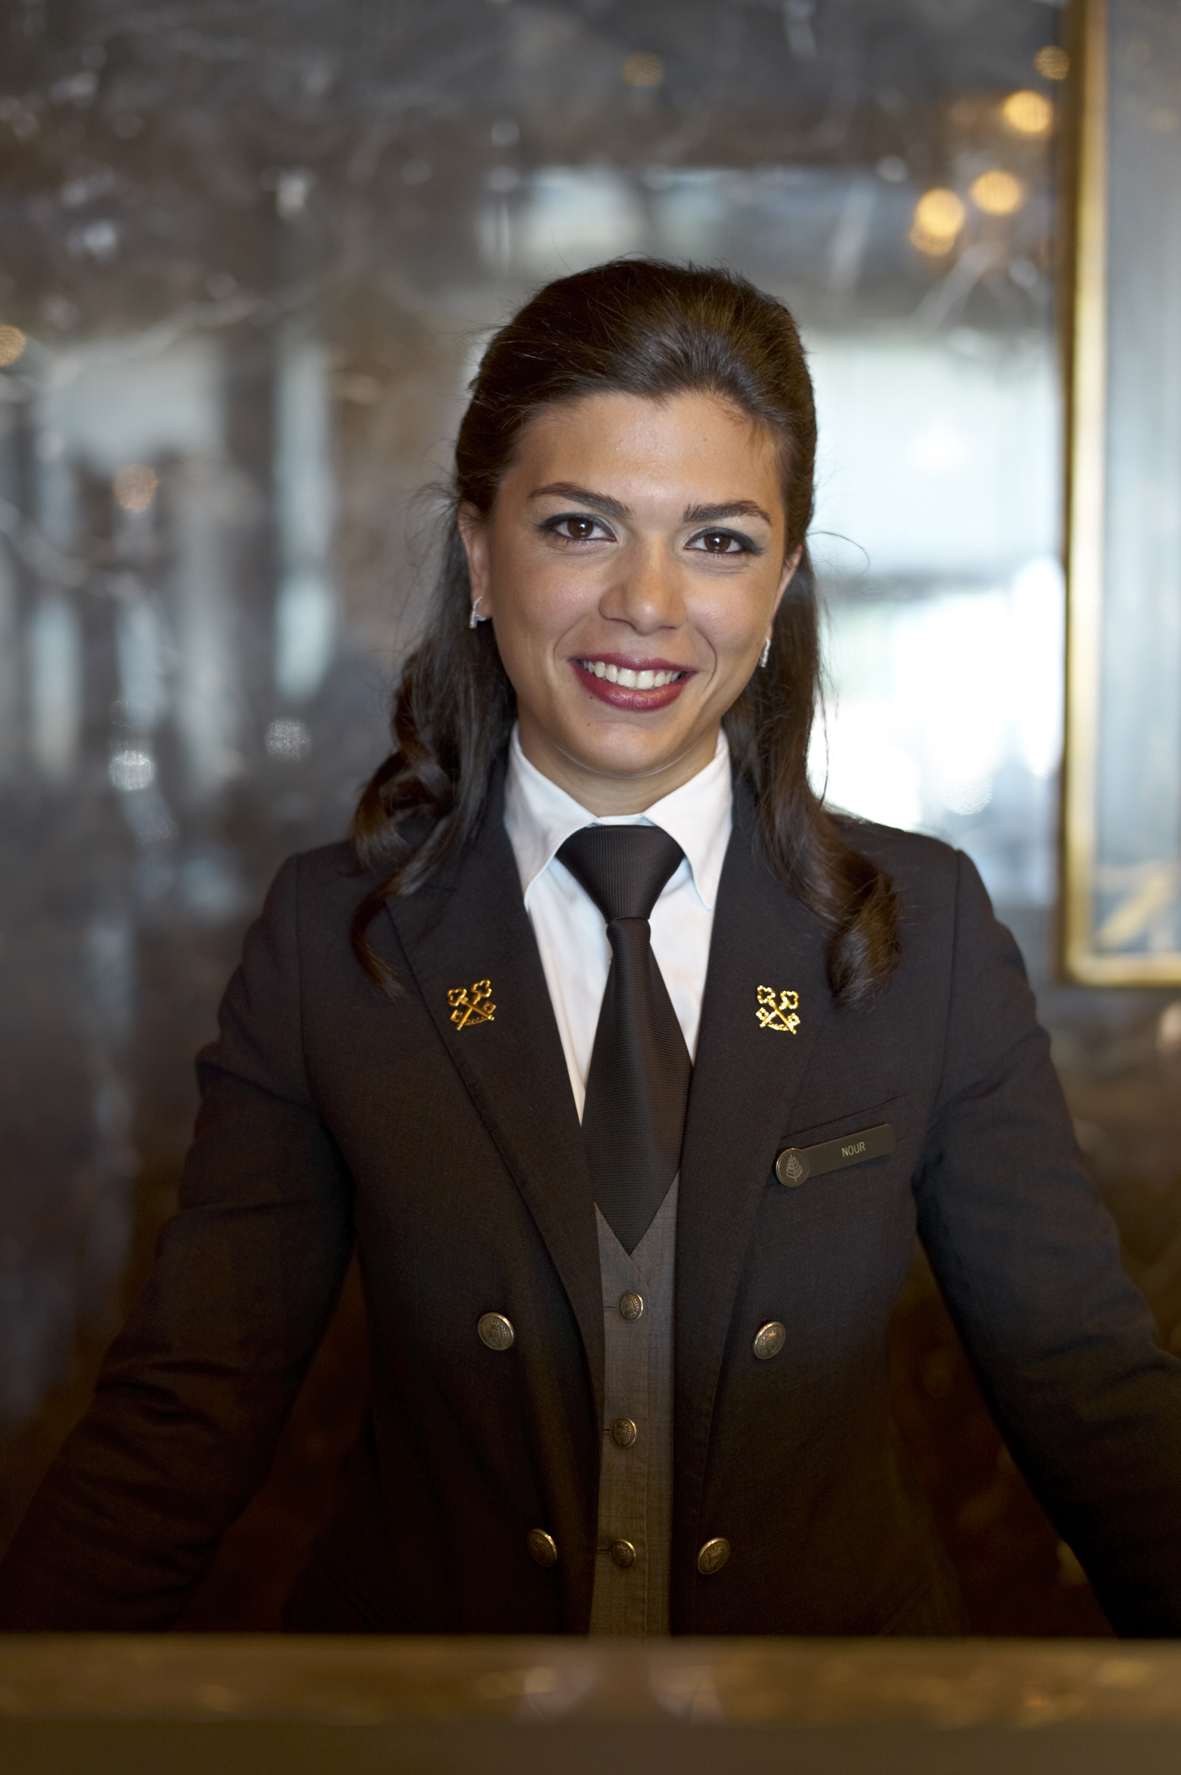 Female Hotel Concierge